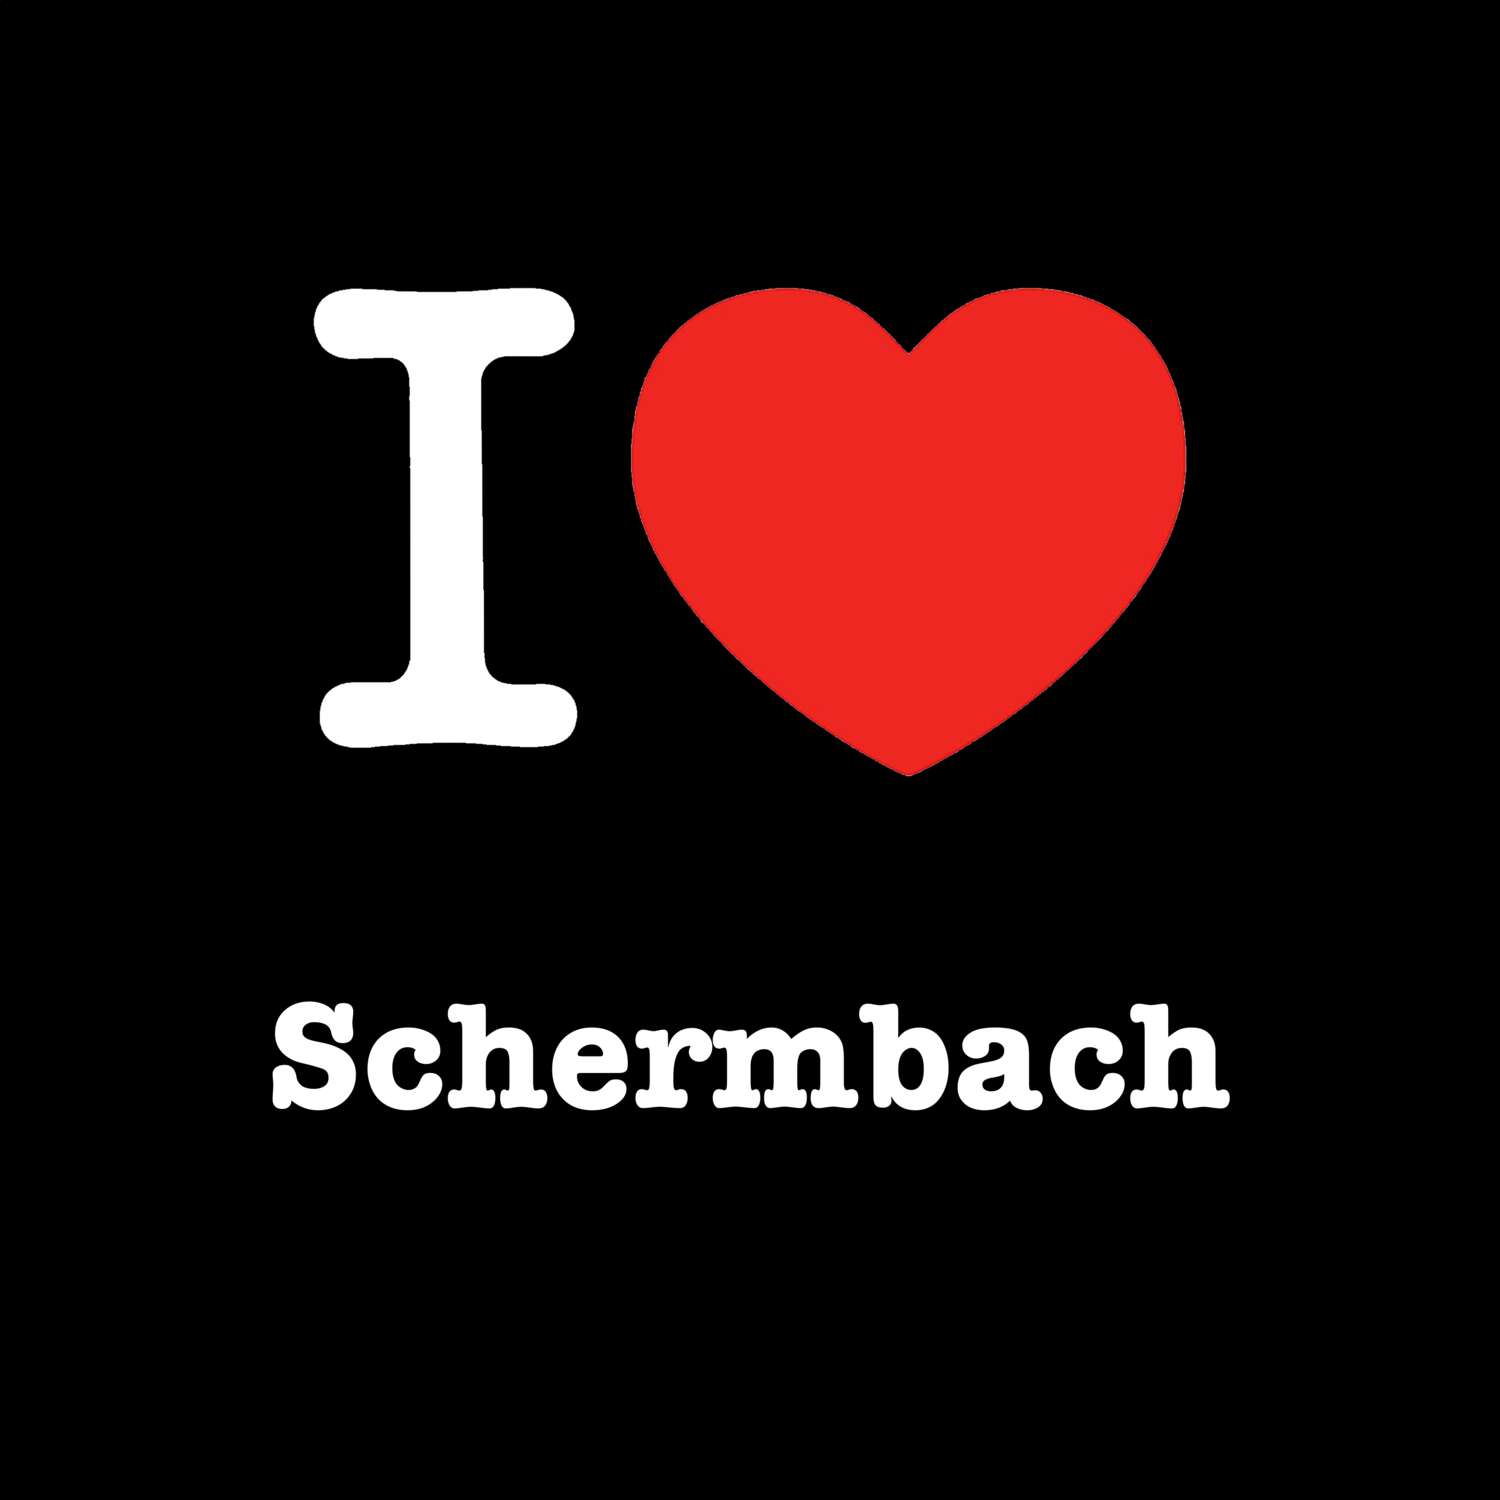 Schermbach T-Shirt »I love«